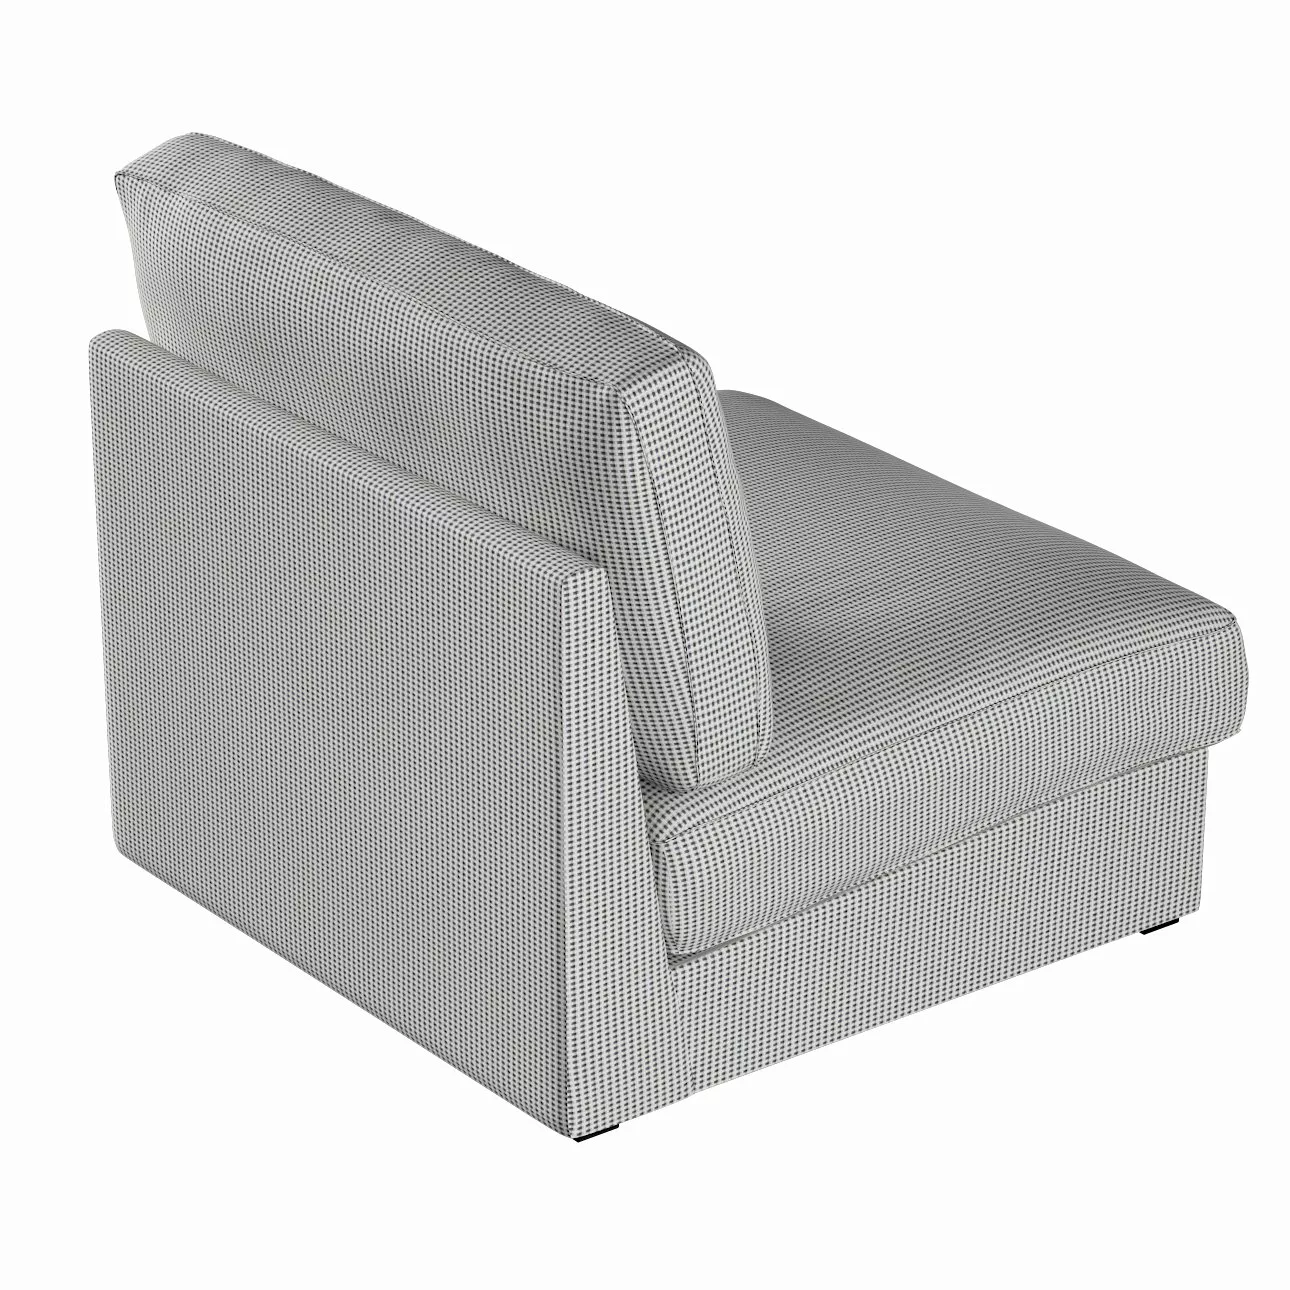 Bezug für Kivik Sessel nicht ausklappbar, schwarz-beige, Bezug für Sessel K günstig online kaufen